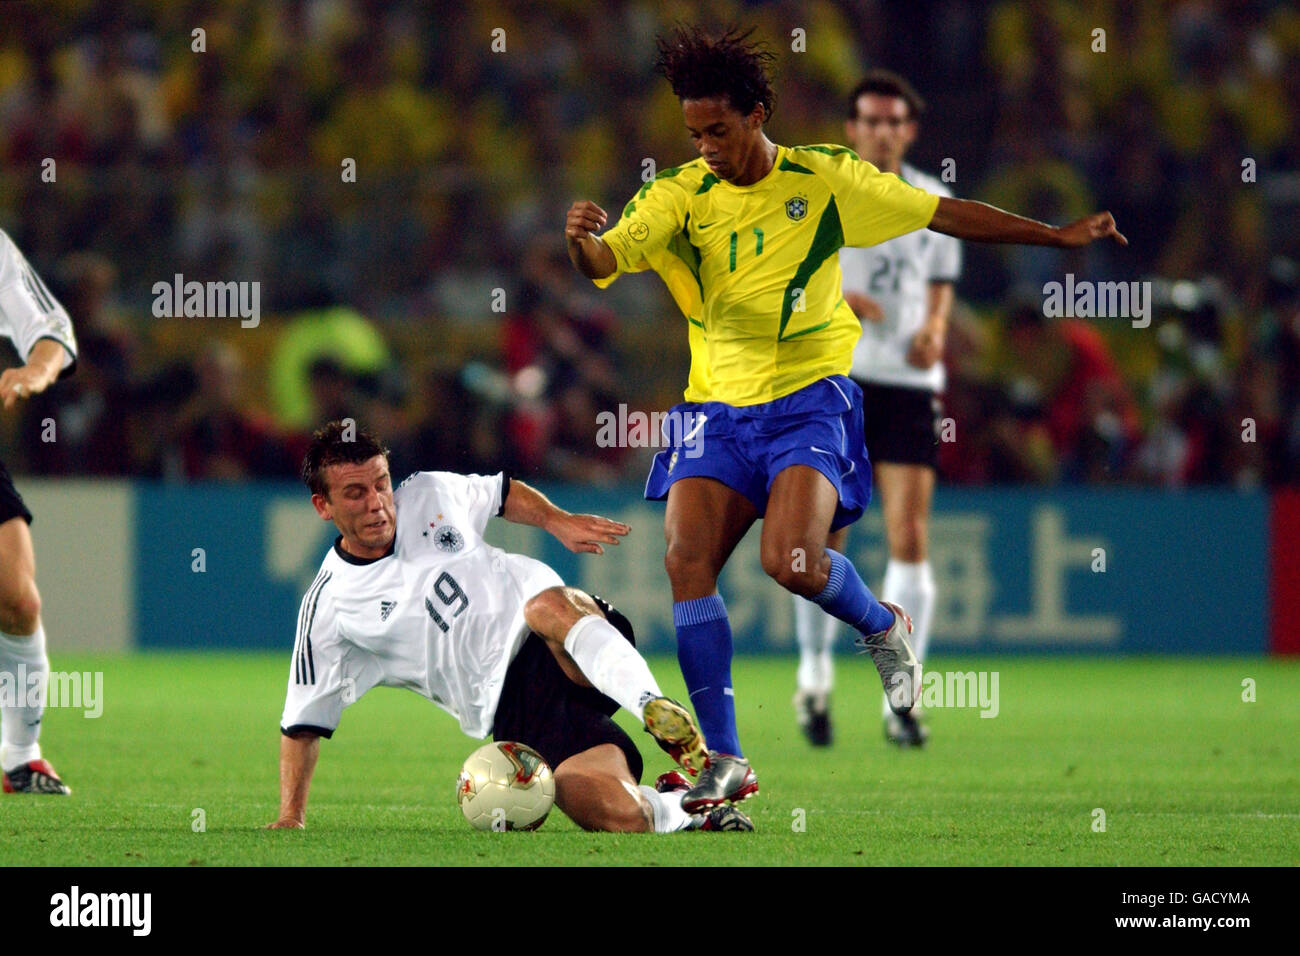 Soccer - FIFA World Cup 2002 - Final - Germany v Brazil. Germany's Bernd Schneider (l) wins the ball from Brazil's Ronaldinho (r) Stock Photo